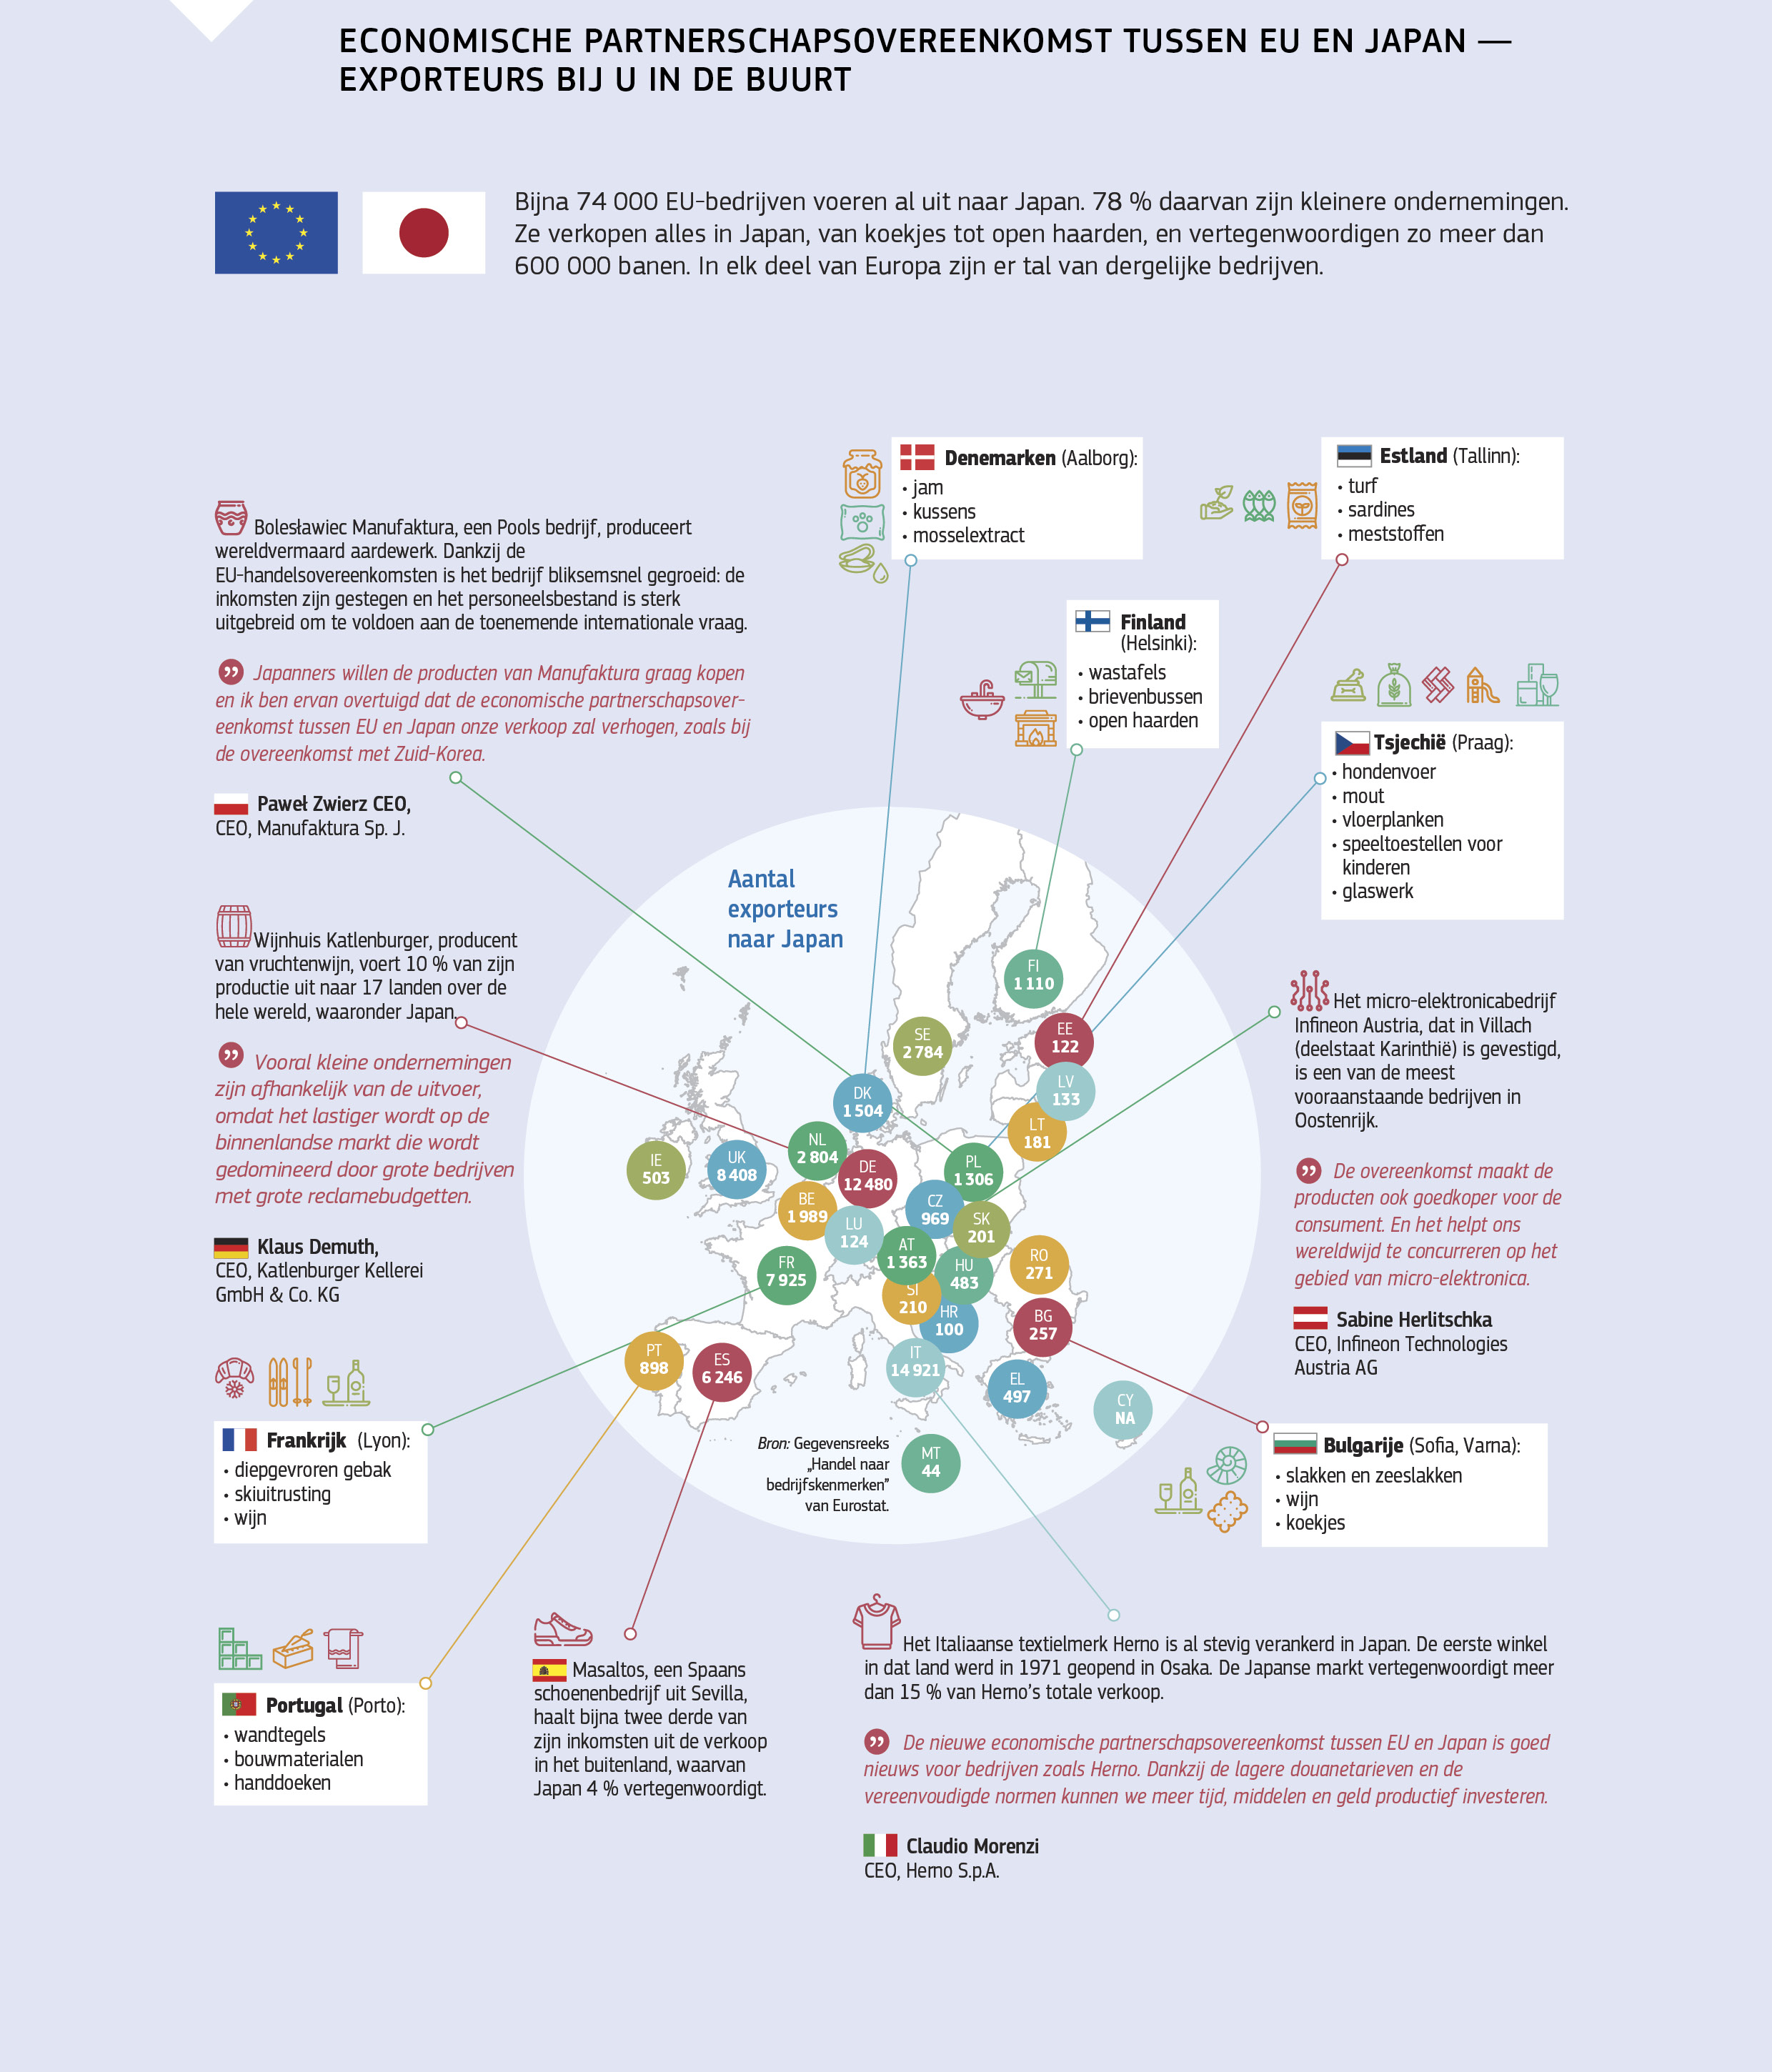 ECONOMISCHE PARTNERSCHAPSOVEREENKOMST TUSSEN EU EN JAPAN — EXPORTEURS BIJ U IN DE BUURT